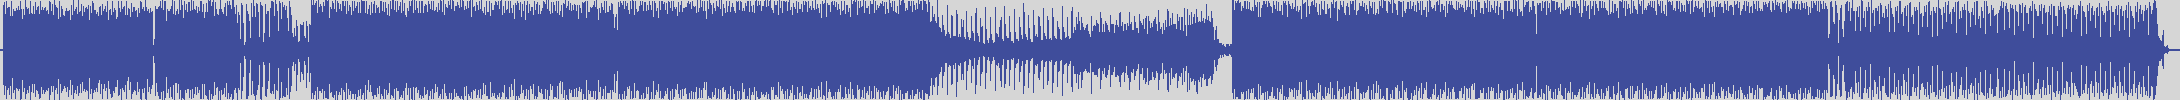 nf_boyz_records [NFY023] Jupiter Childs - Karma Gheddon [Pump up Edit] audio wave form